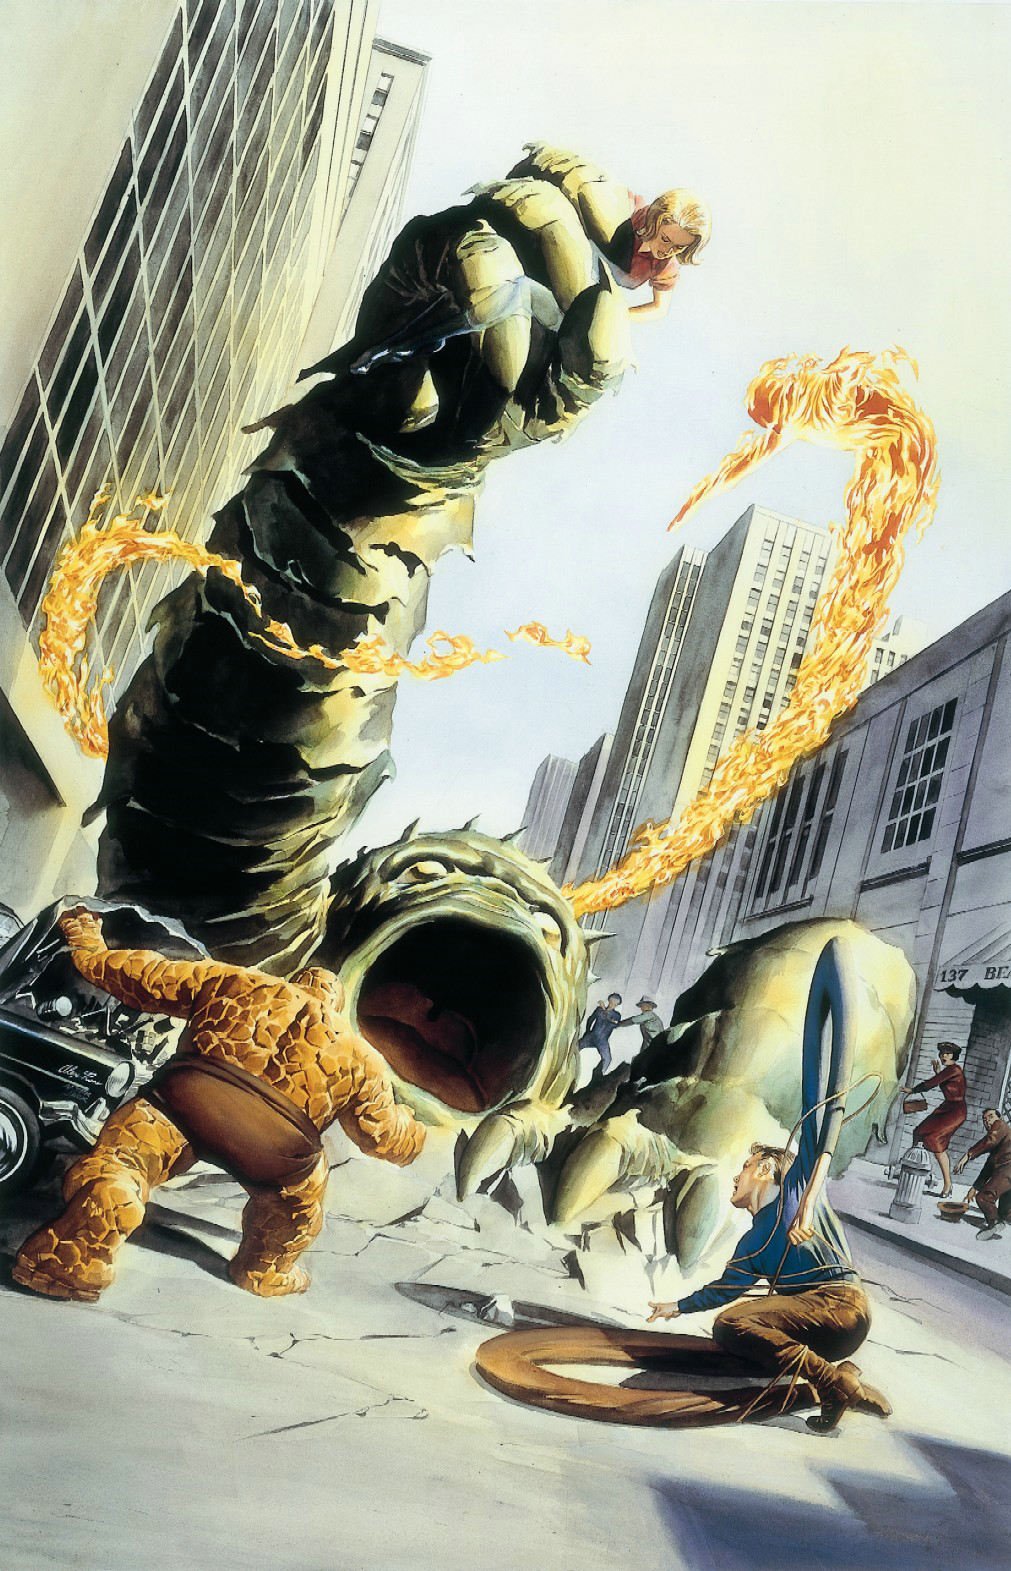 Fantastic Four Omnibus Vol 1 1 | Marvel Database | Fandom